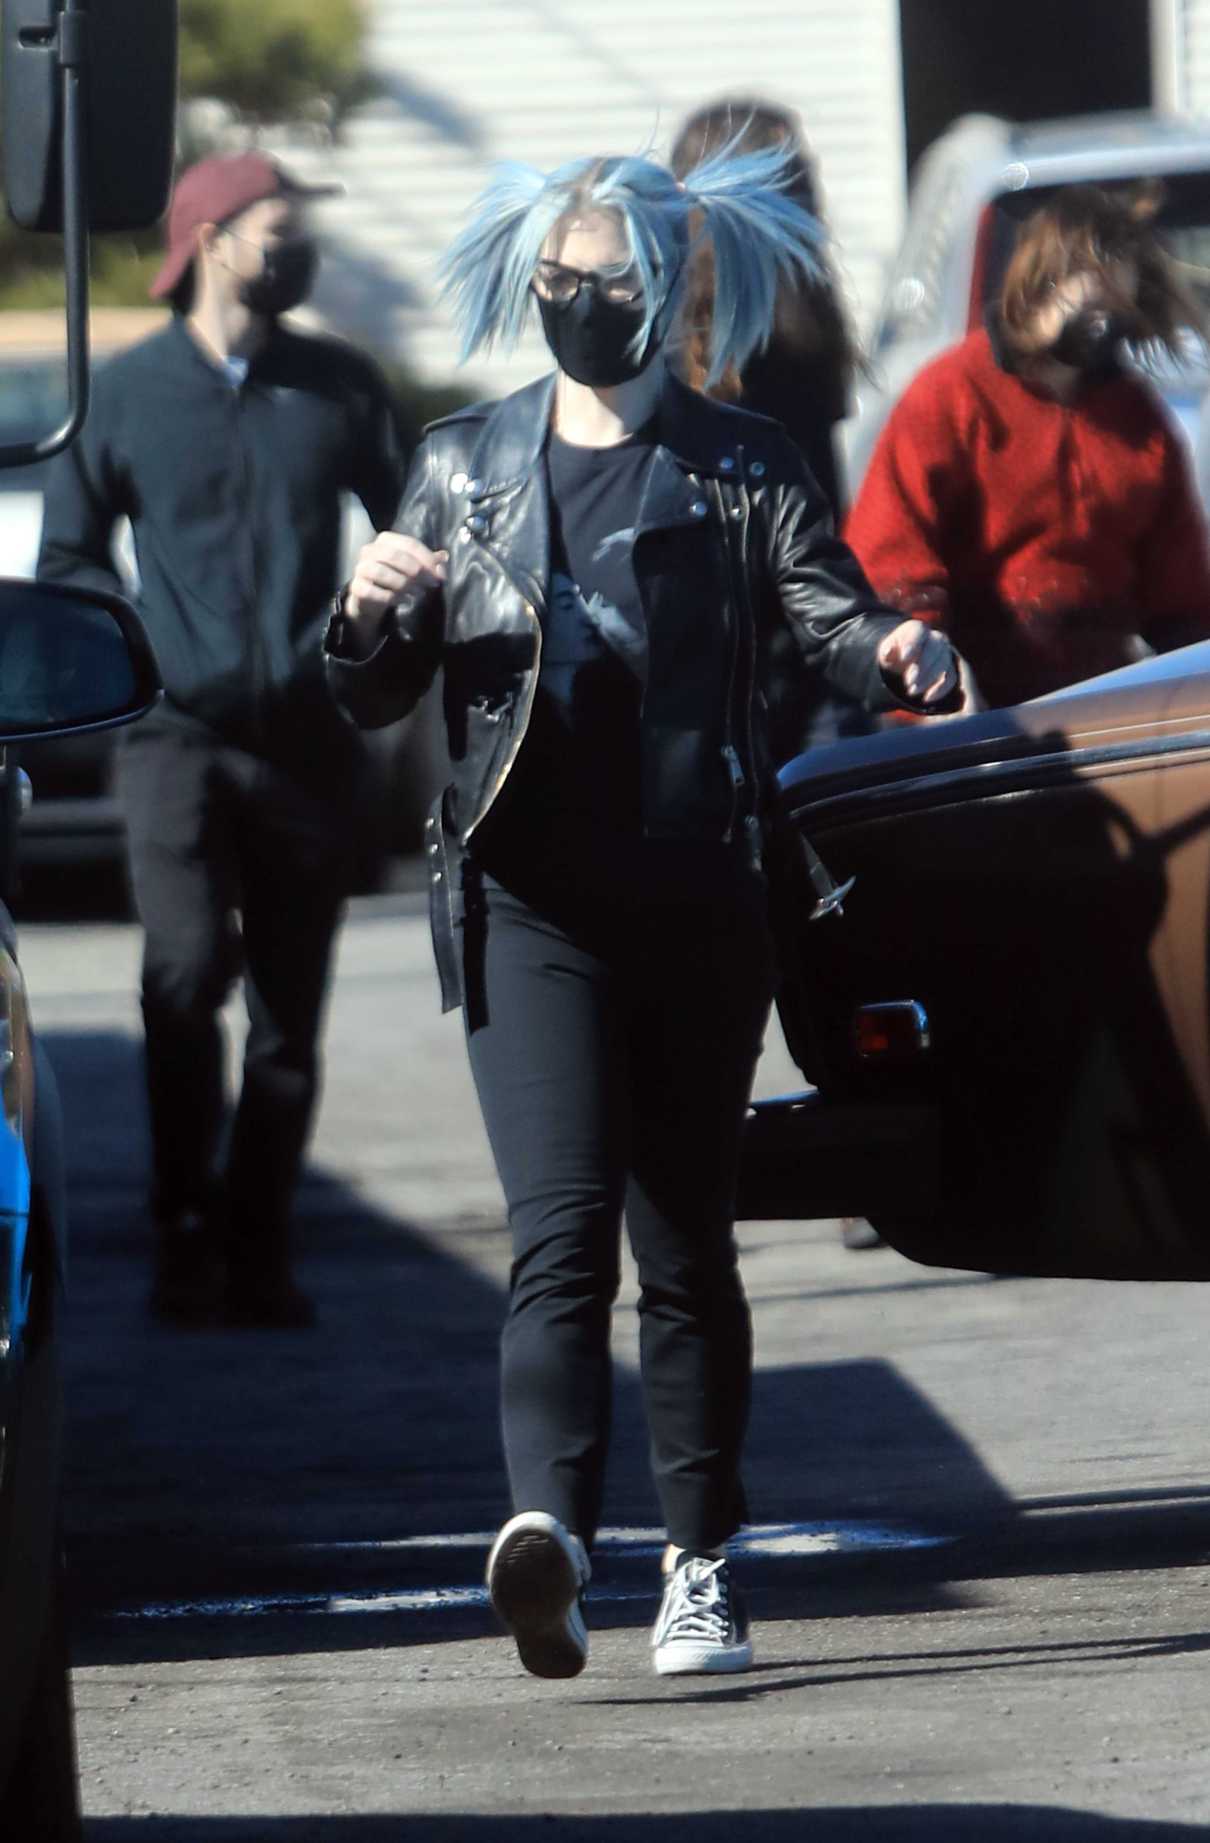 Kelly Osbourne in a Black Leather Jacket